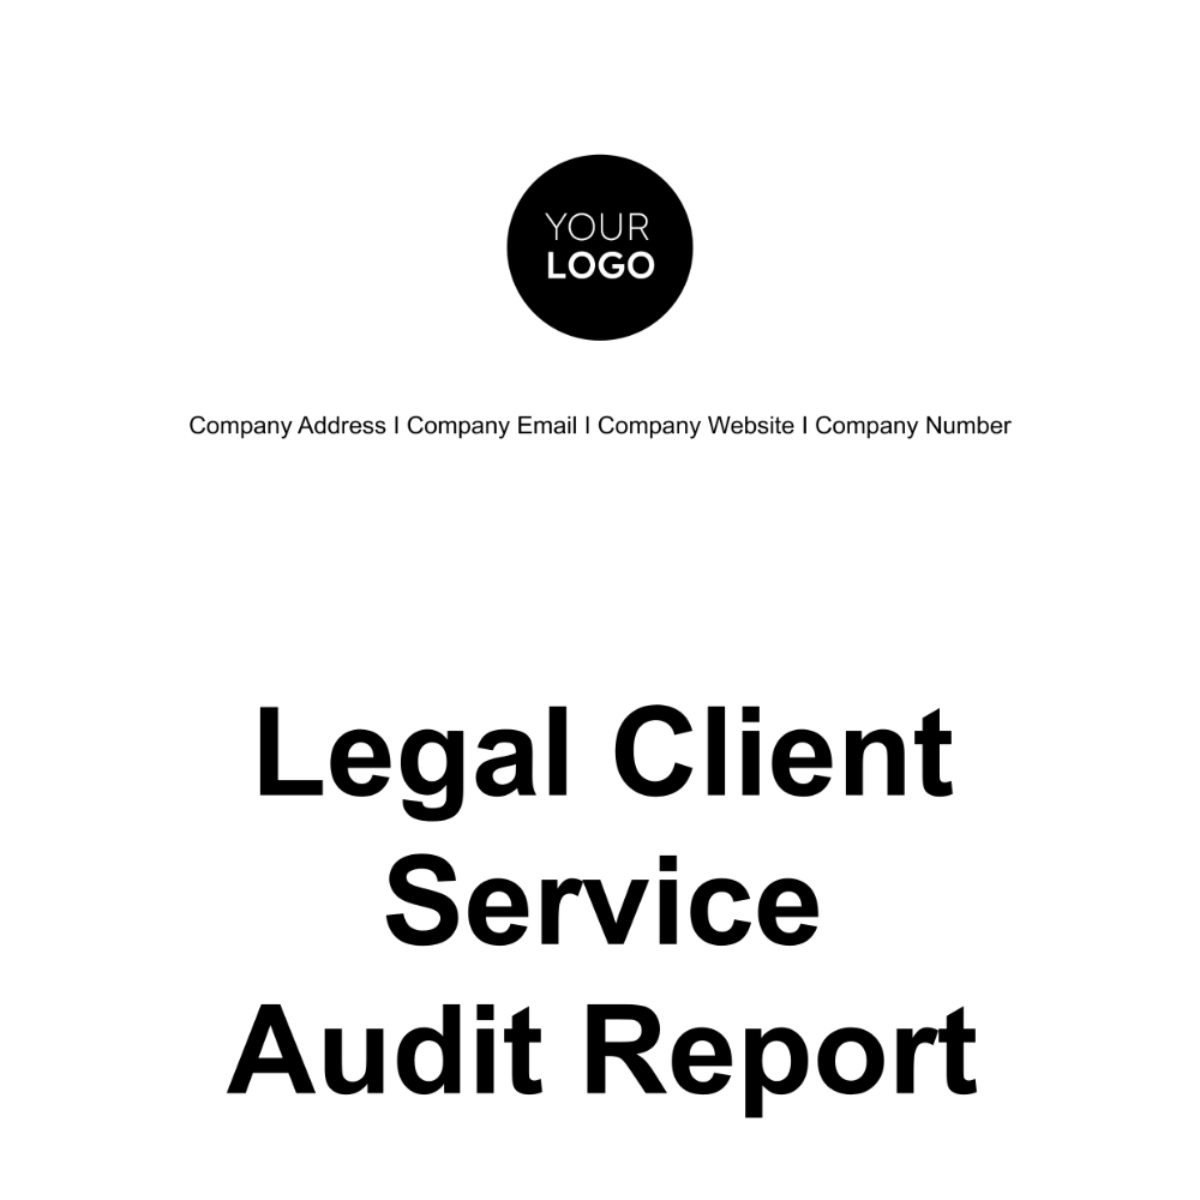 Legal Client Service Audit Report Template